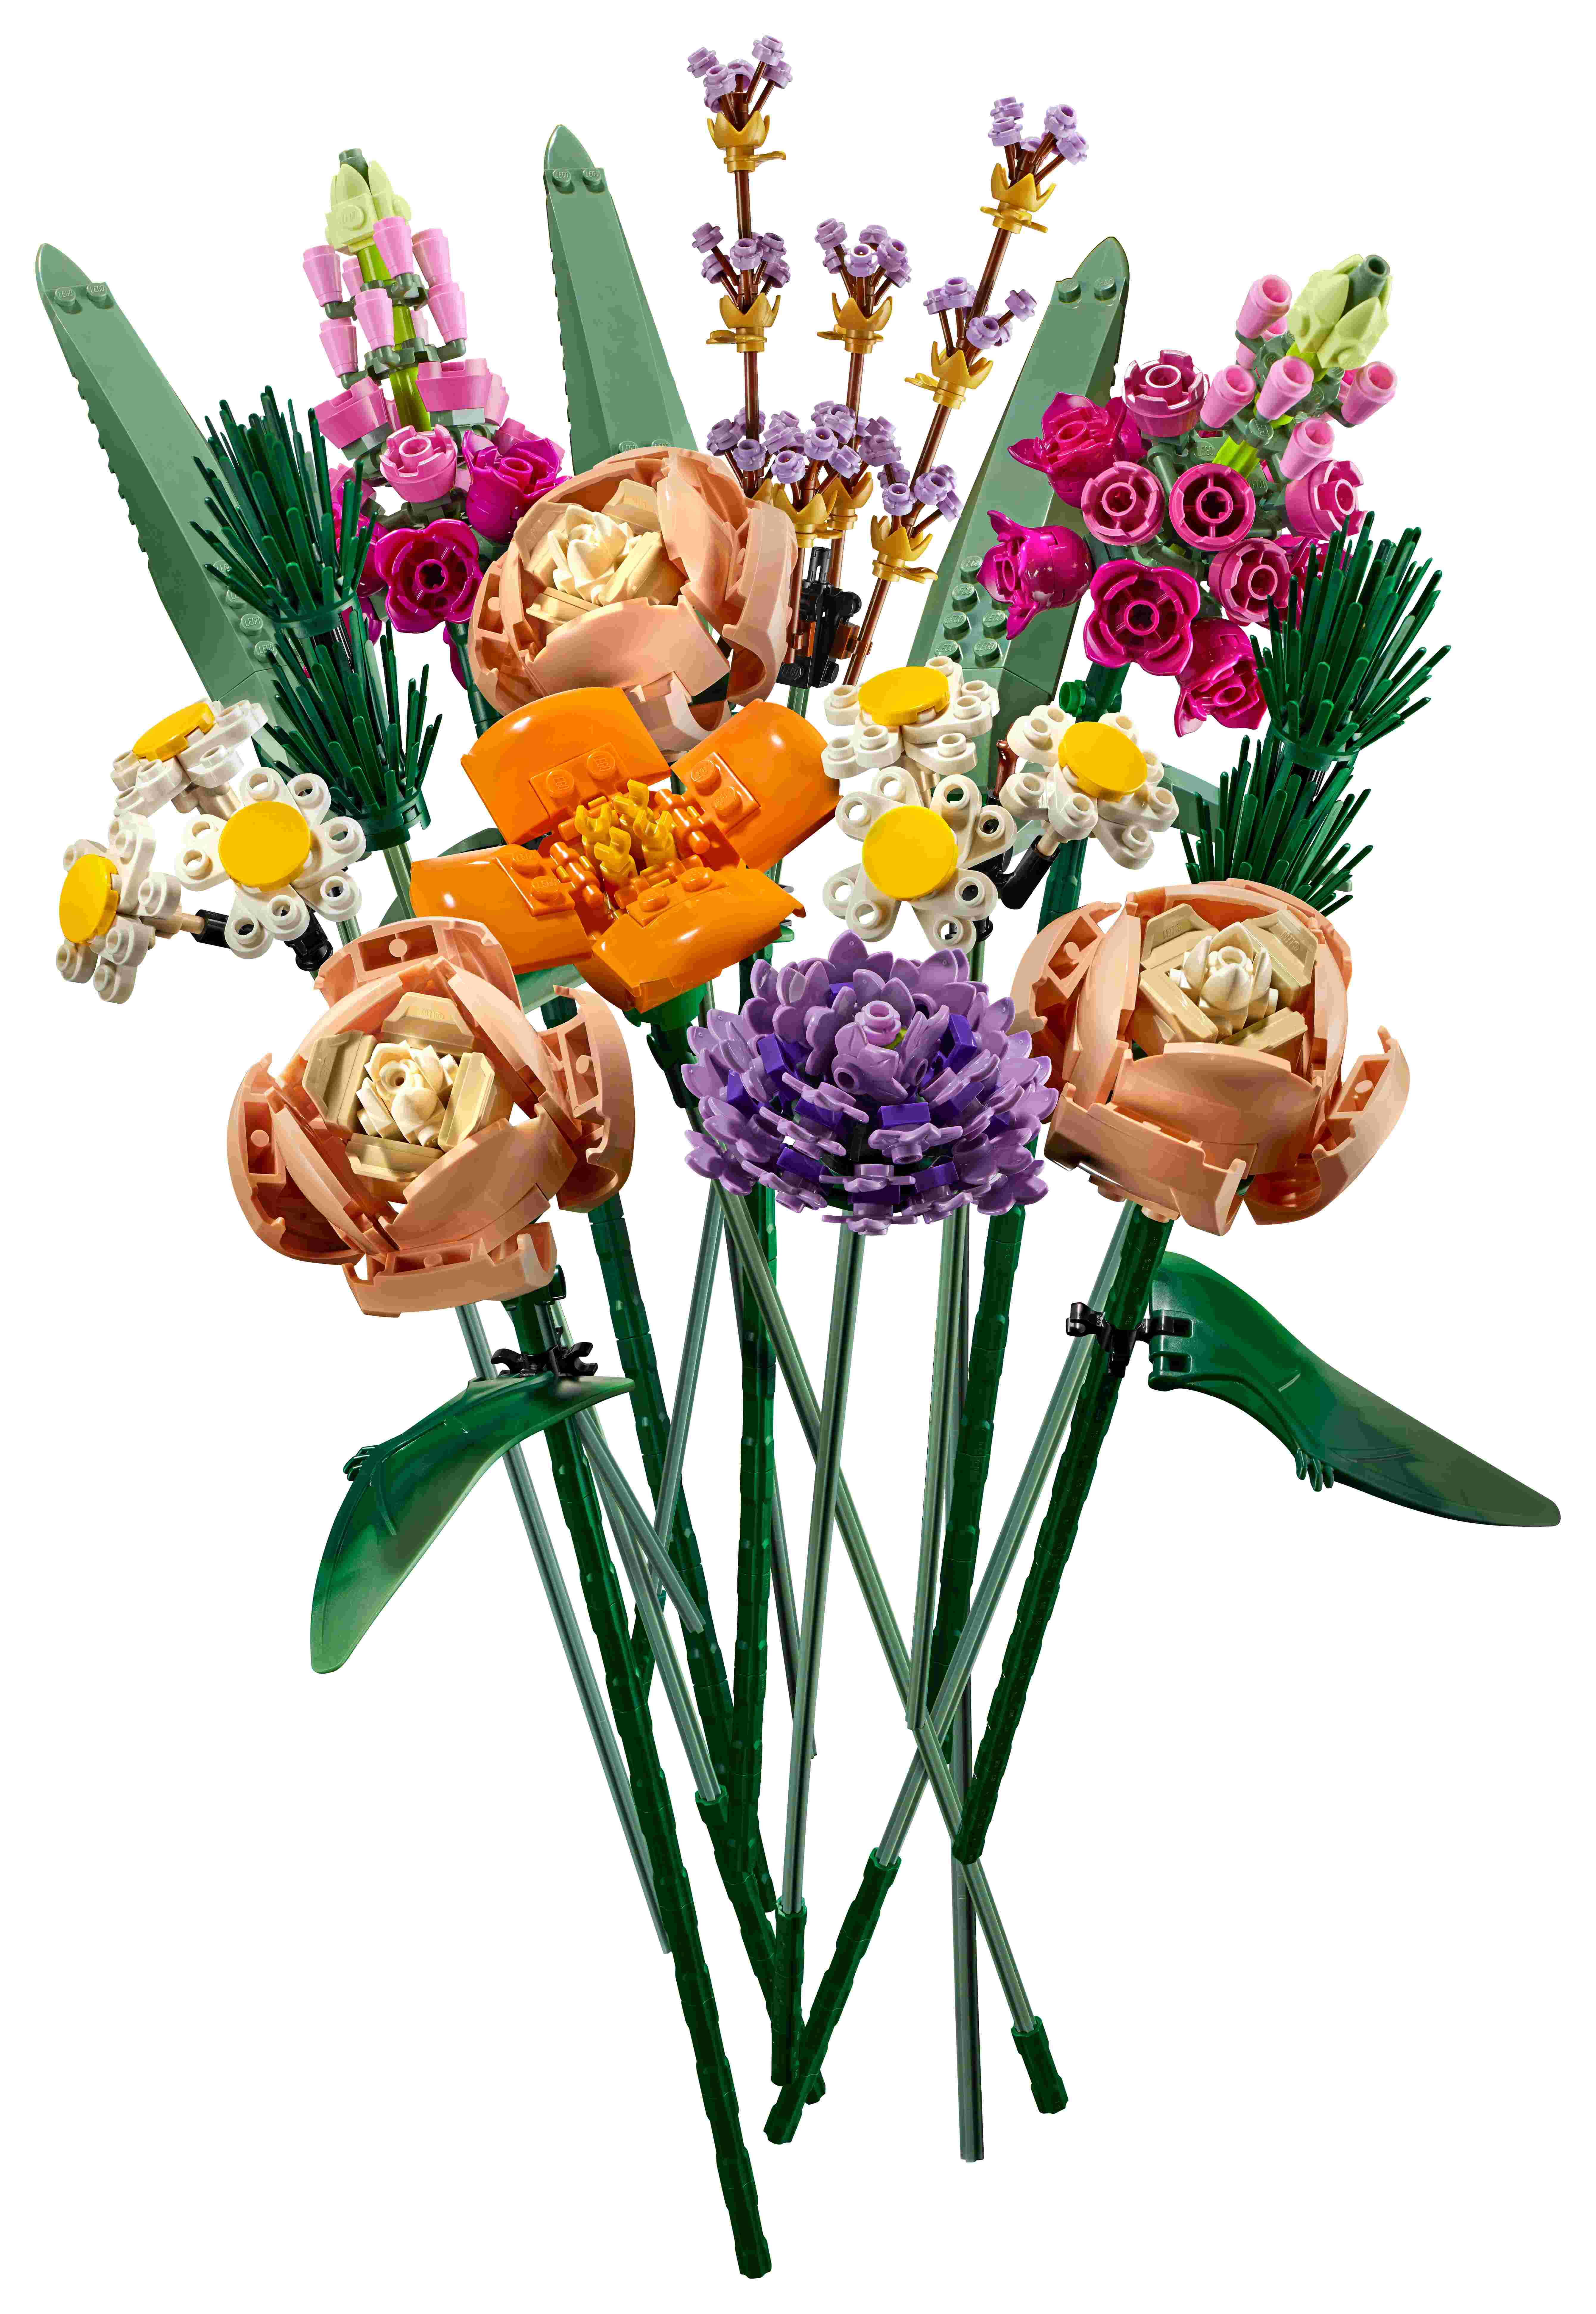 LEGO 10280 Blumenstrauß, künstliche Blumen, Botanik-Kollektion, Home Deko